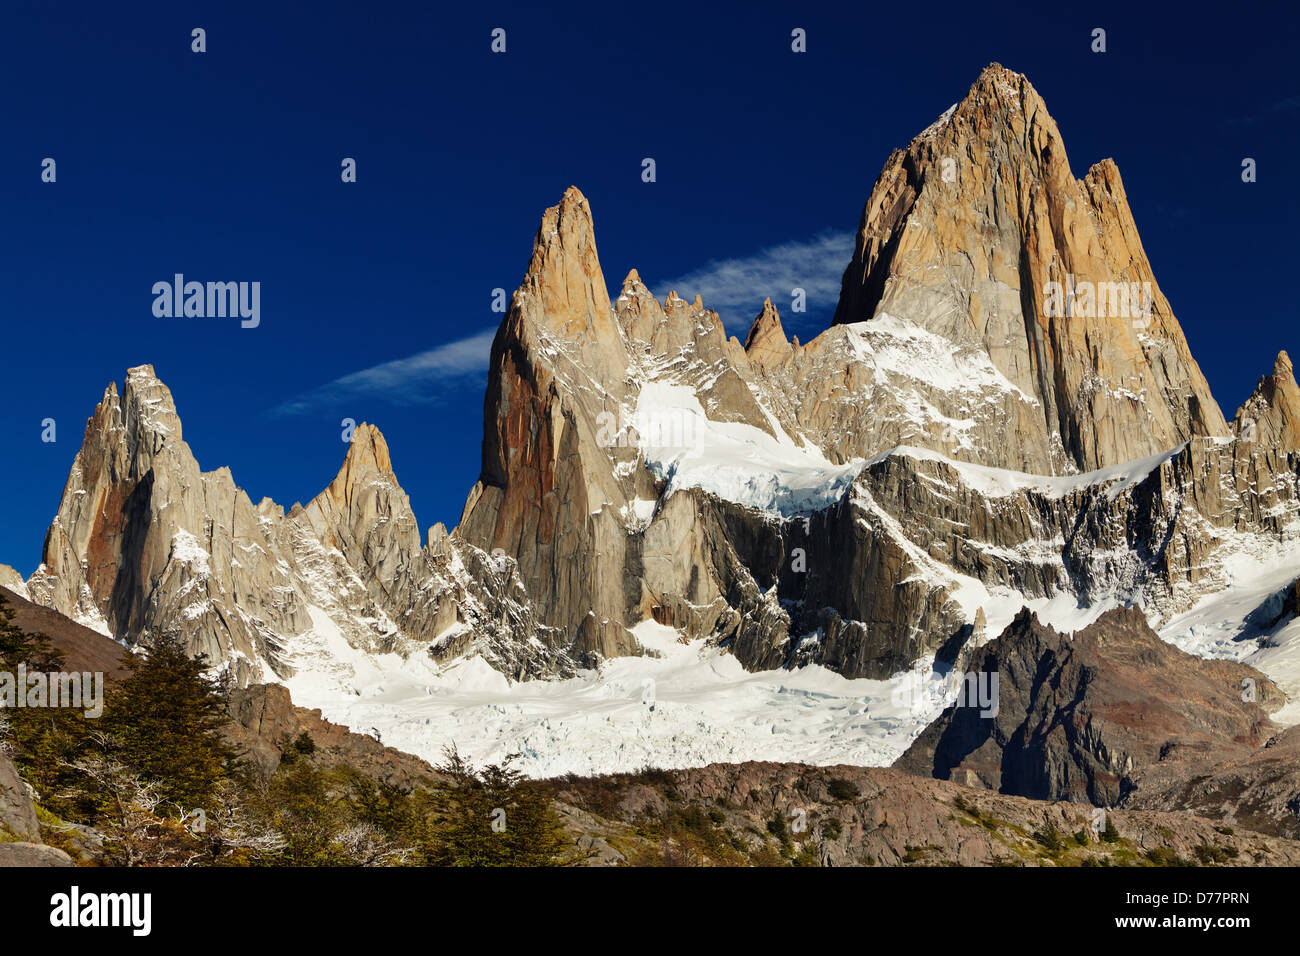 Mount Fitz Roy, Patagonia, Argentina Stock Photo